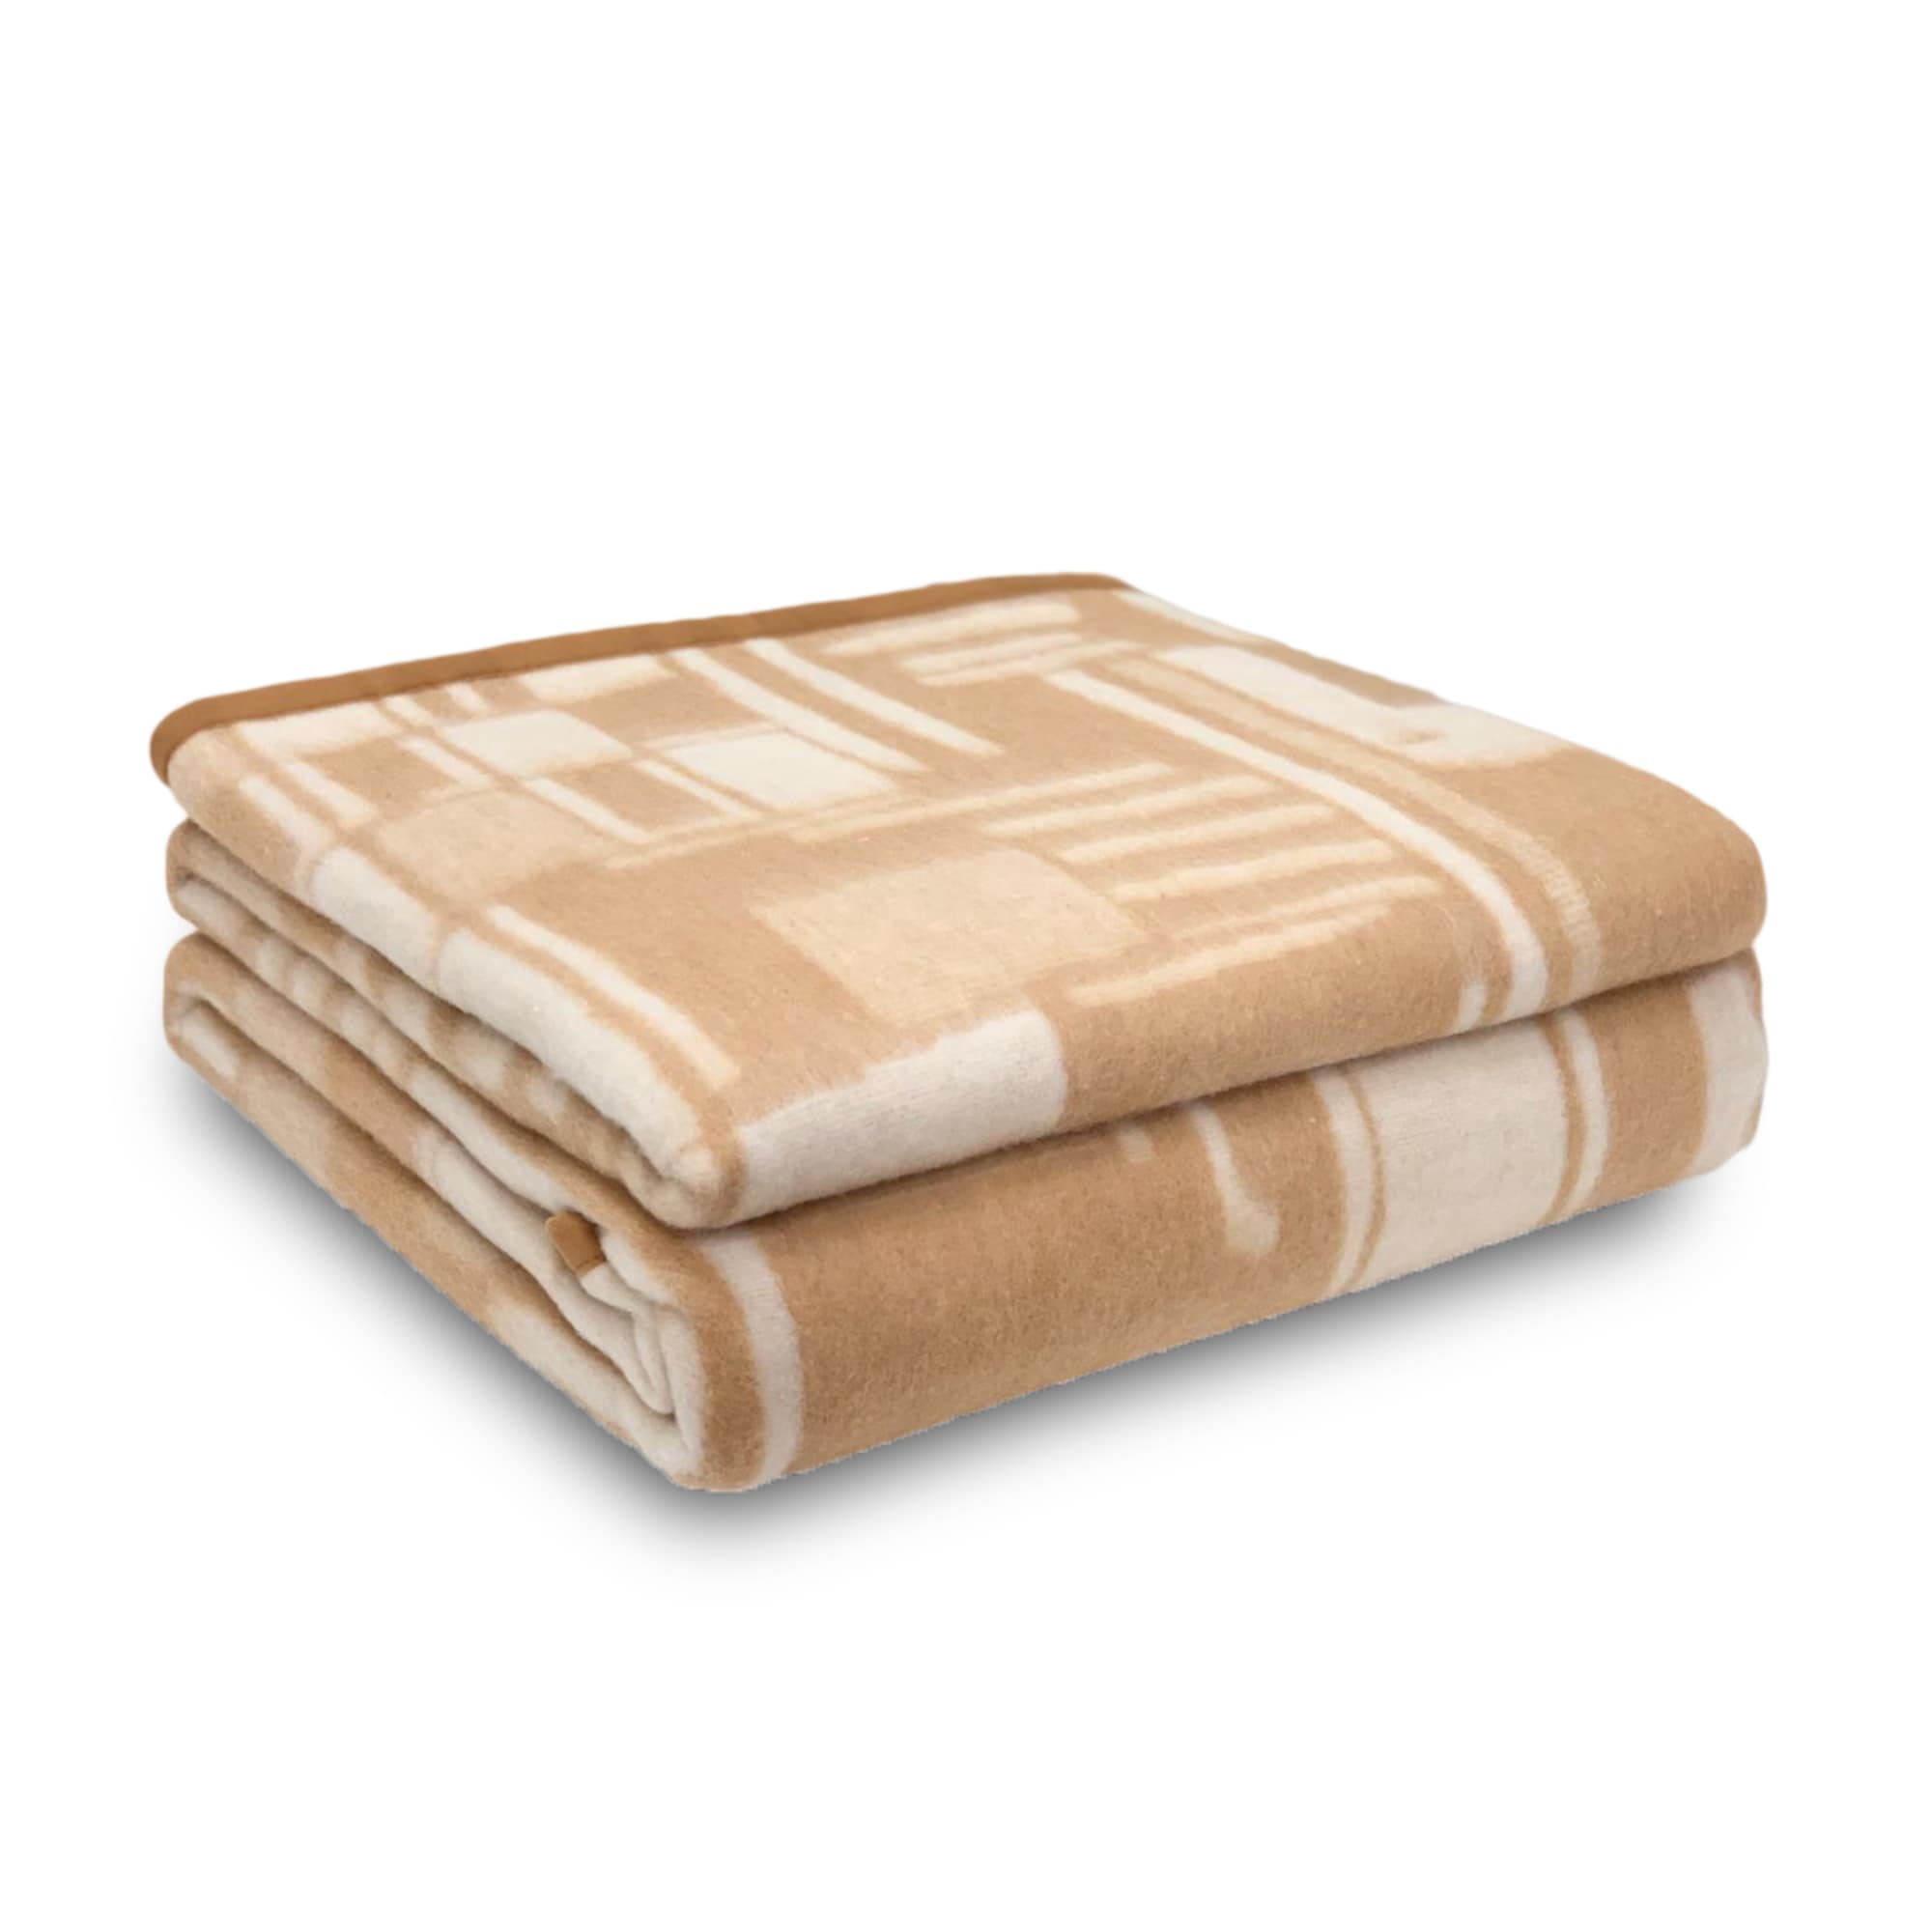 Coperta invernale in misto lana Boston Blankets singola letto 1 piazza 3643